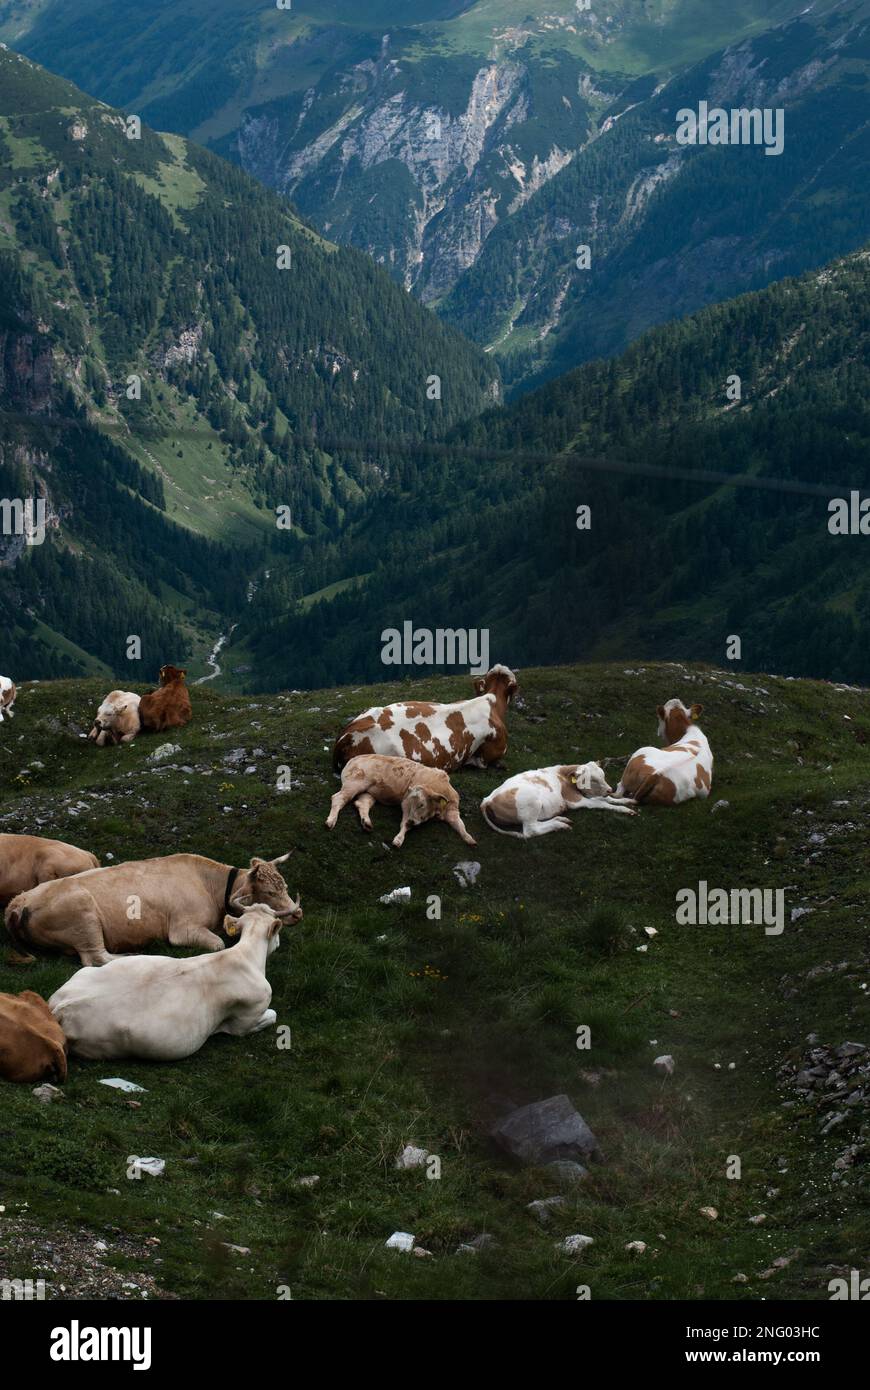 Vaches alpines sur herbe verte dans les montagnes Banque D'Images